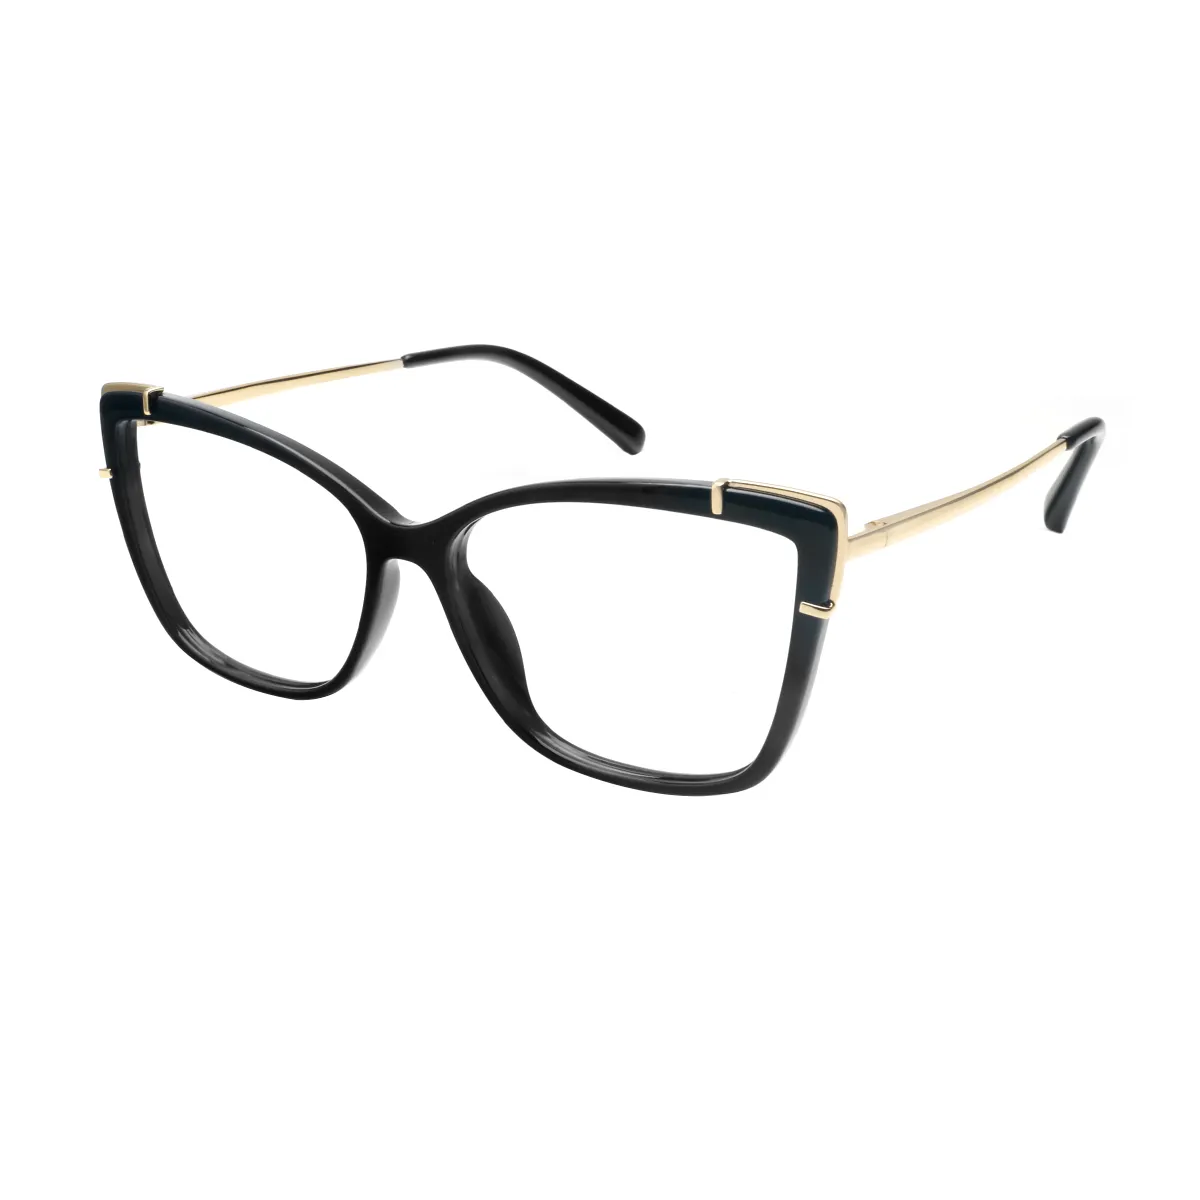 Jayne - Cat-eye Black Glasses for Women - EFE